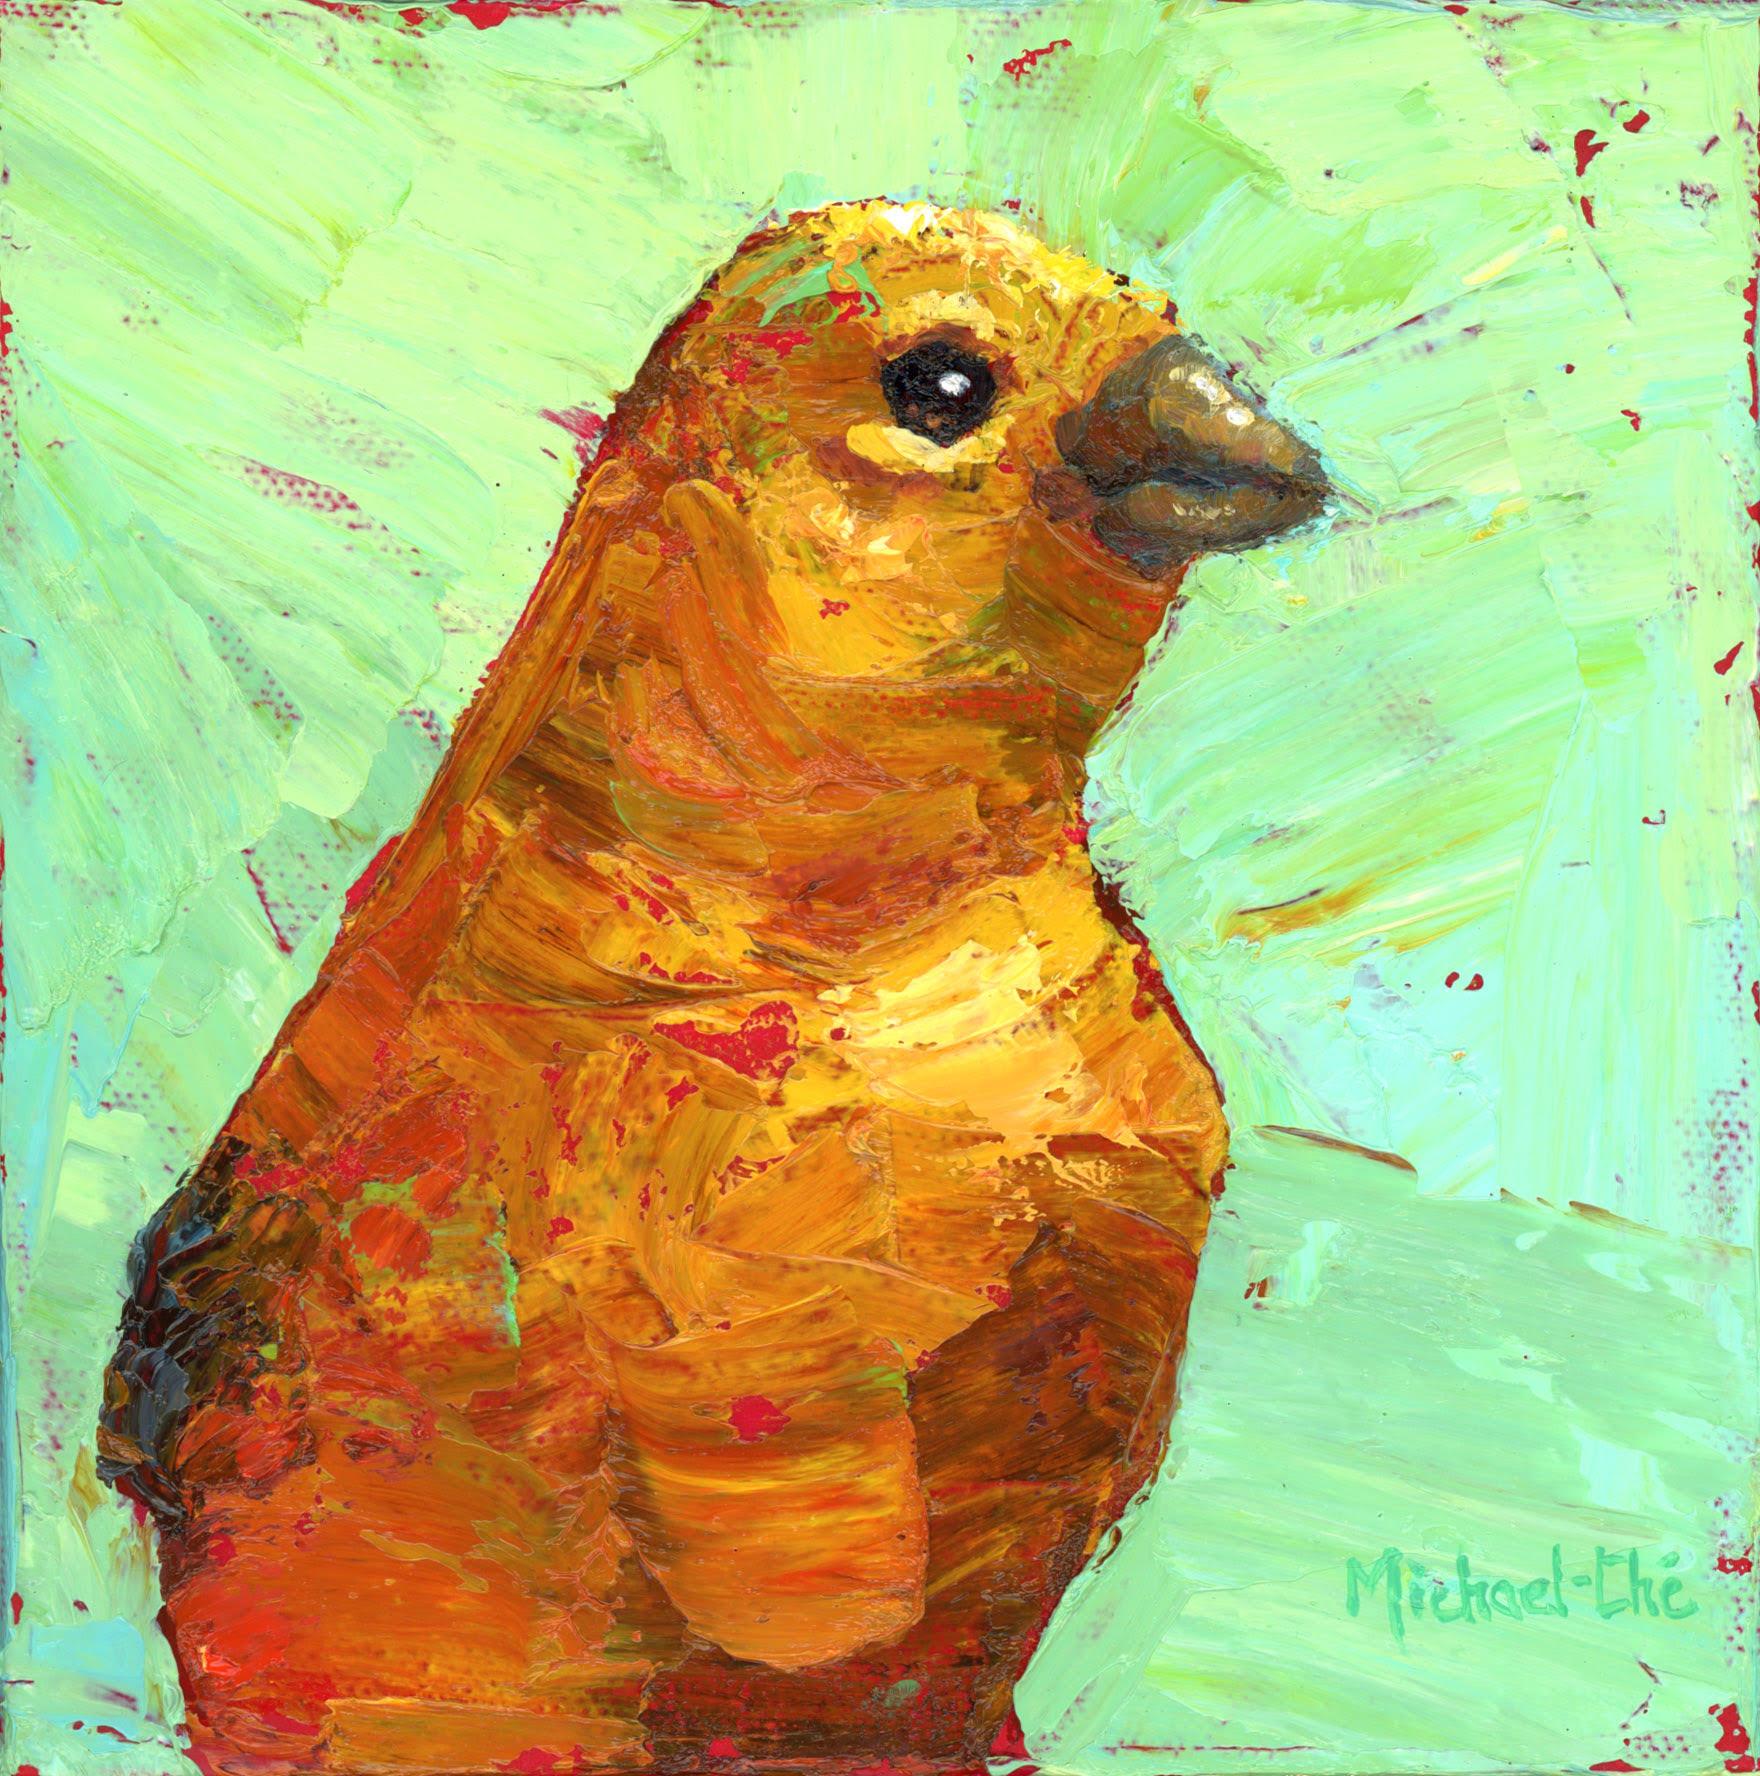 Animal Painting Michael-Che Swisher - "And It Glows" (And It Glows) - Peinture à l'huile d'un oiseau jaune sur fond vert